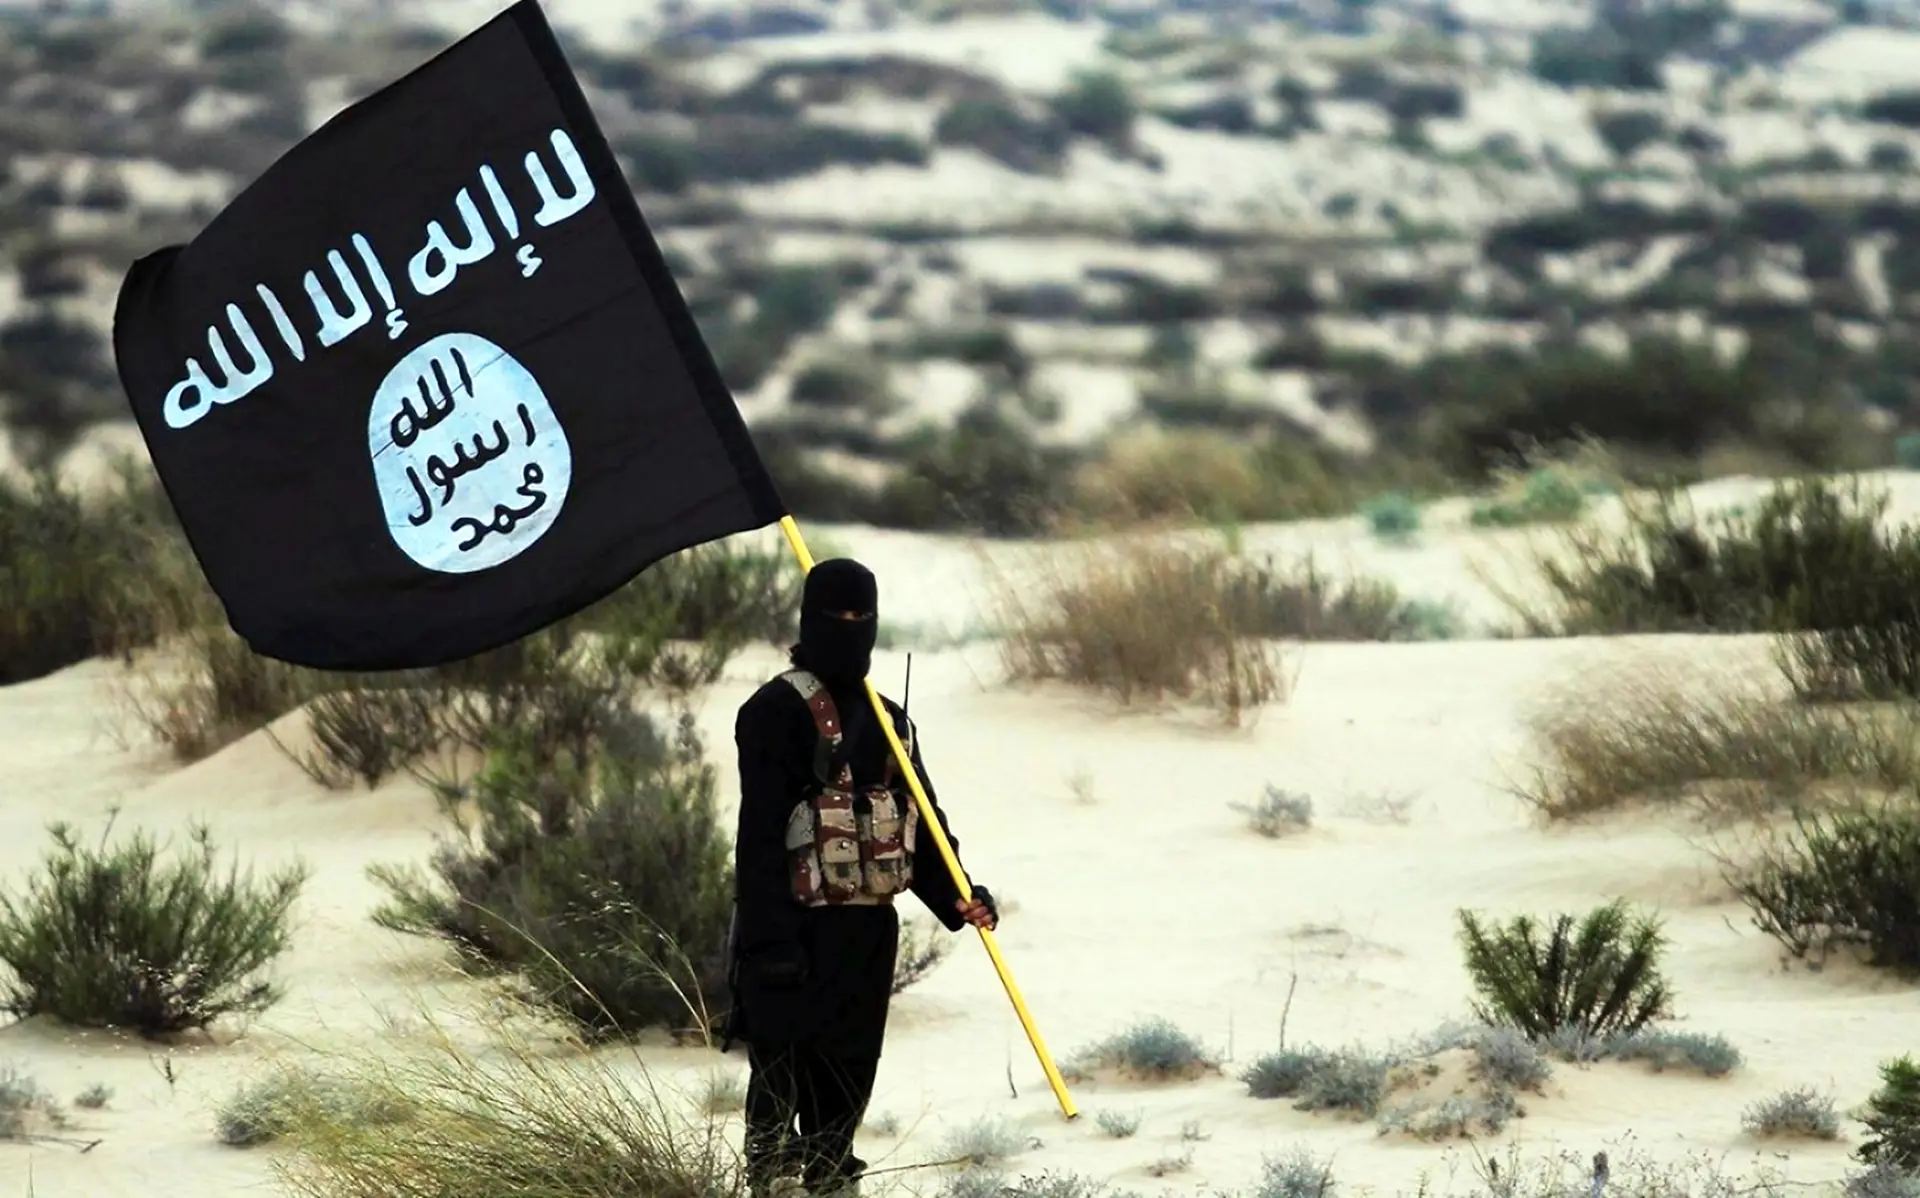 Bandeira do autoproclamado Estado Islâmico (Daesh)